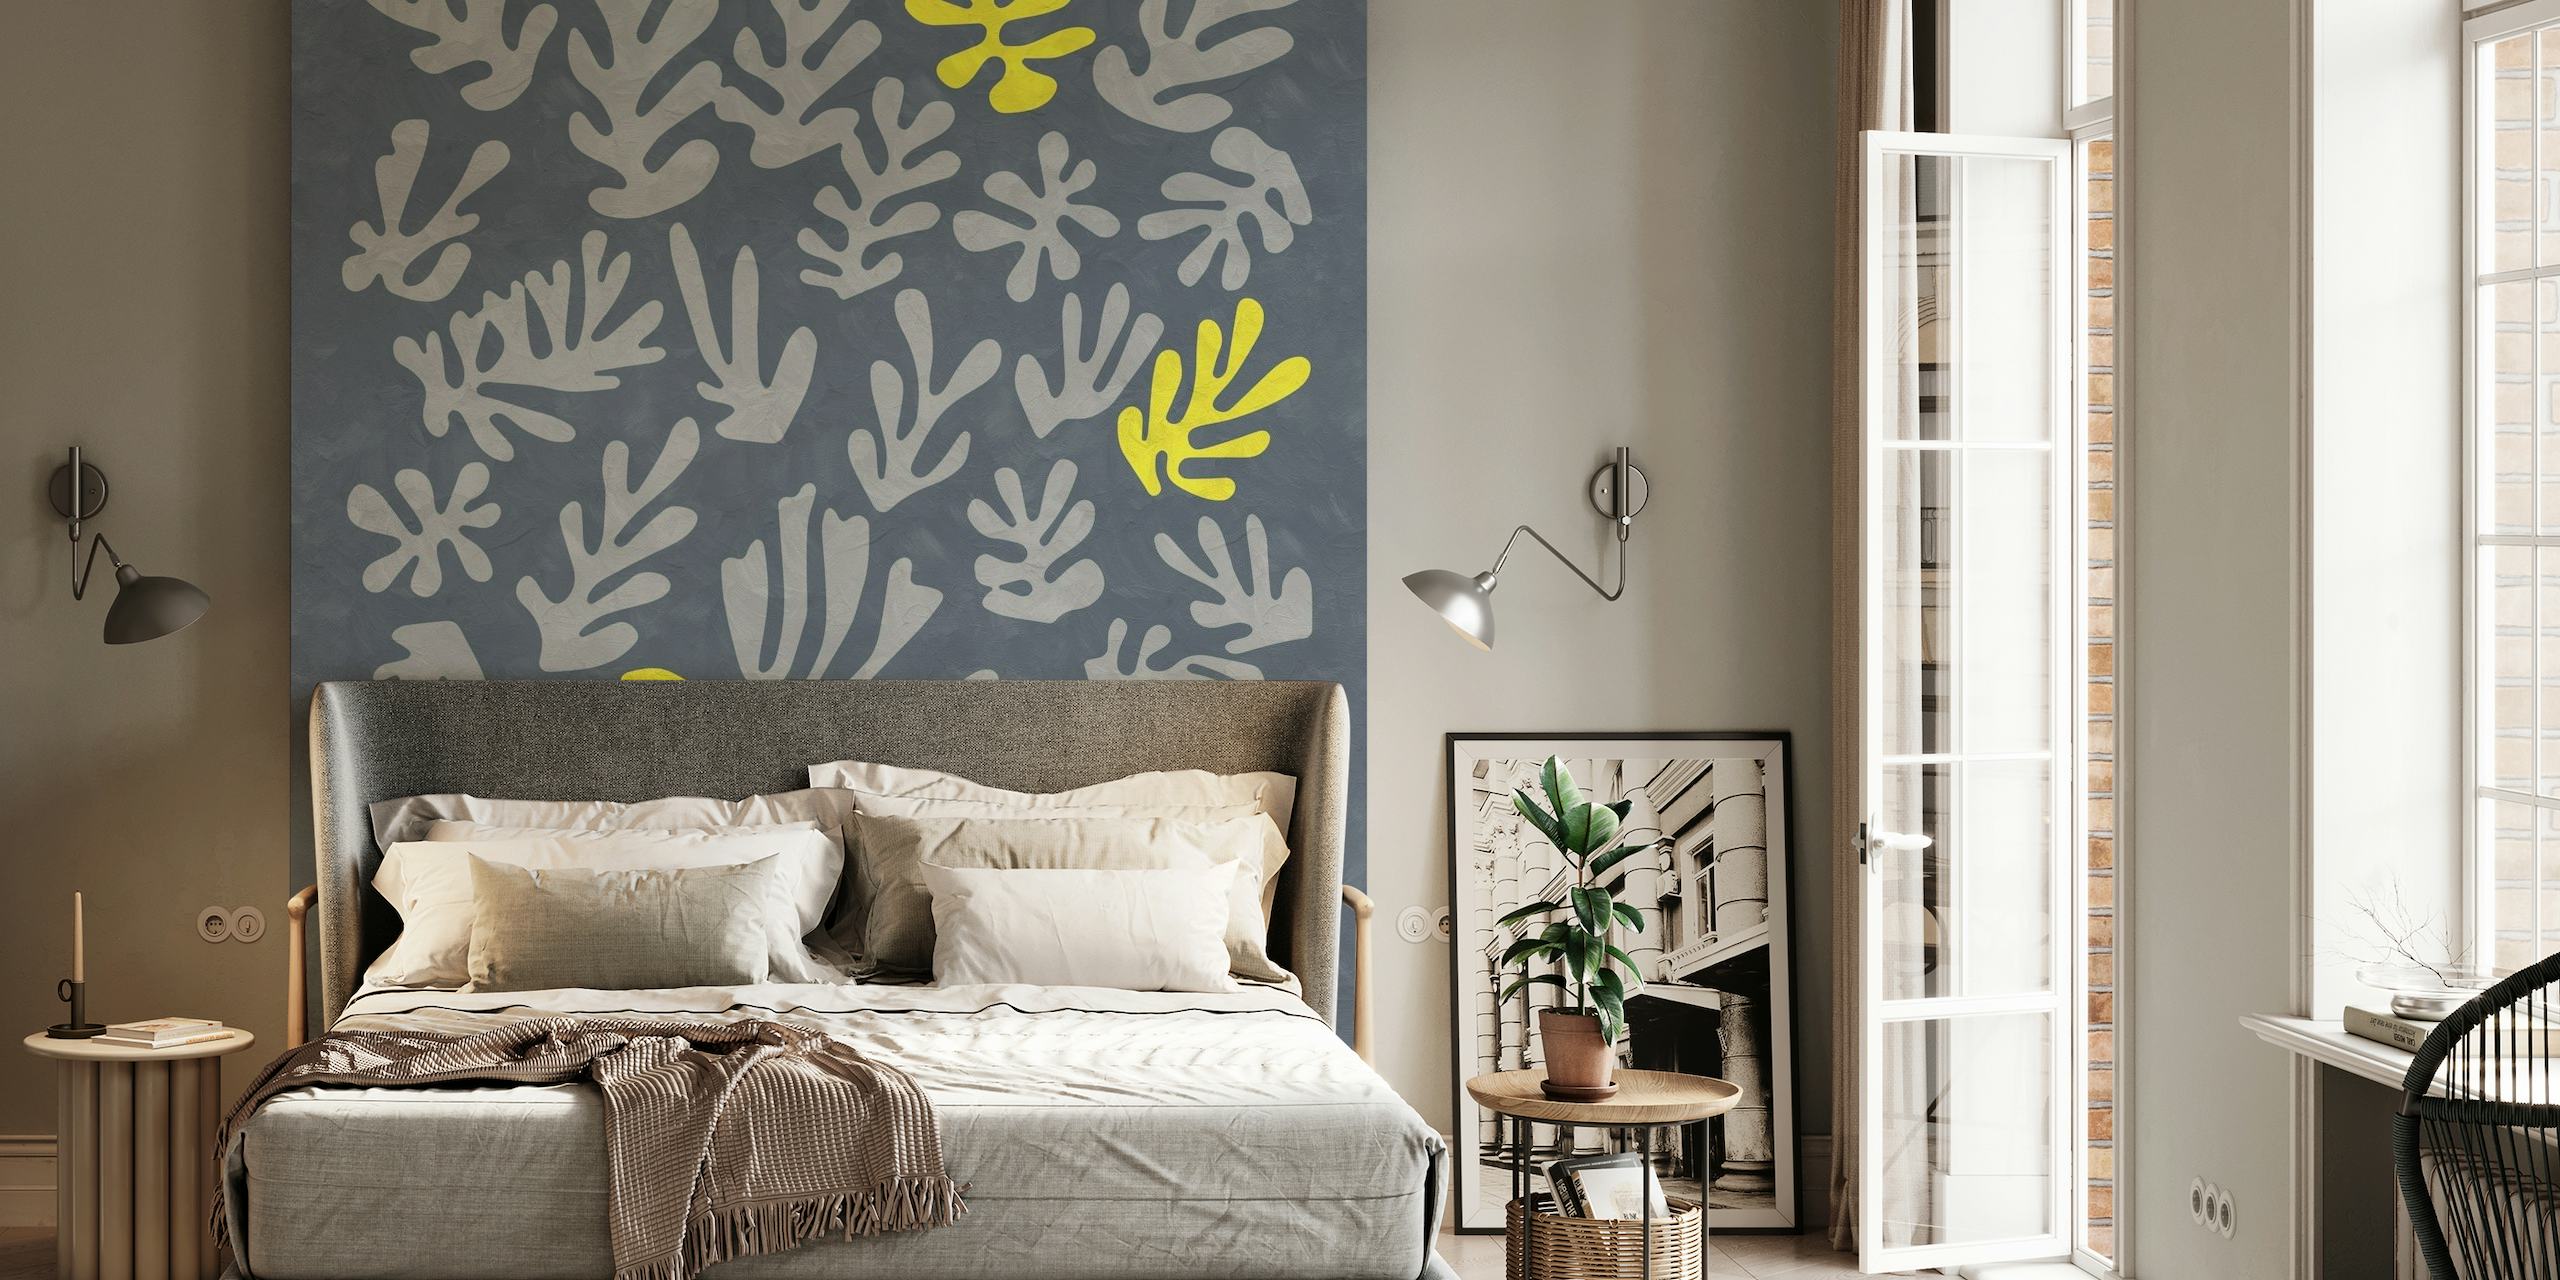 Abstrakti kasvitieteellinen keltainen Matisse-inspiroima kuvio harmaalla taustamaalauksella